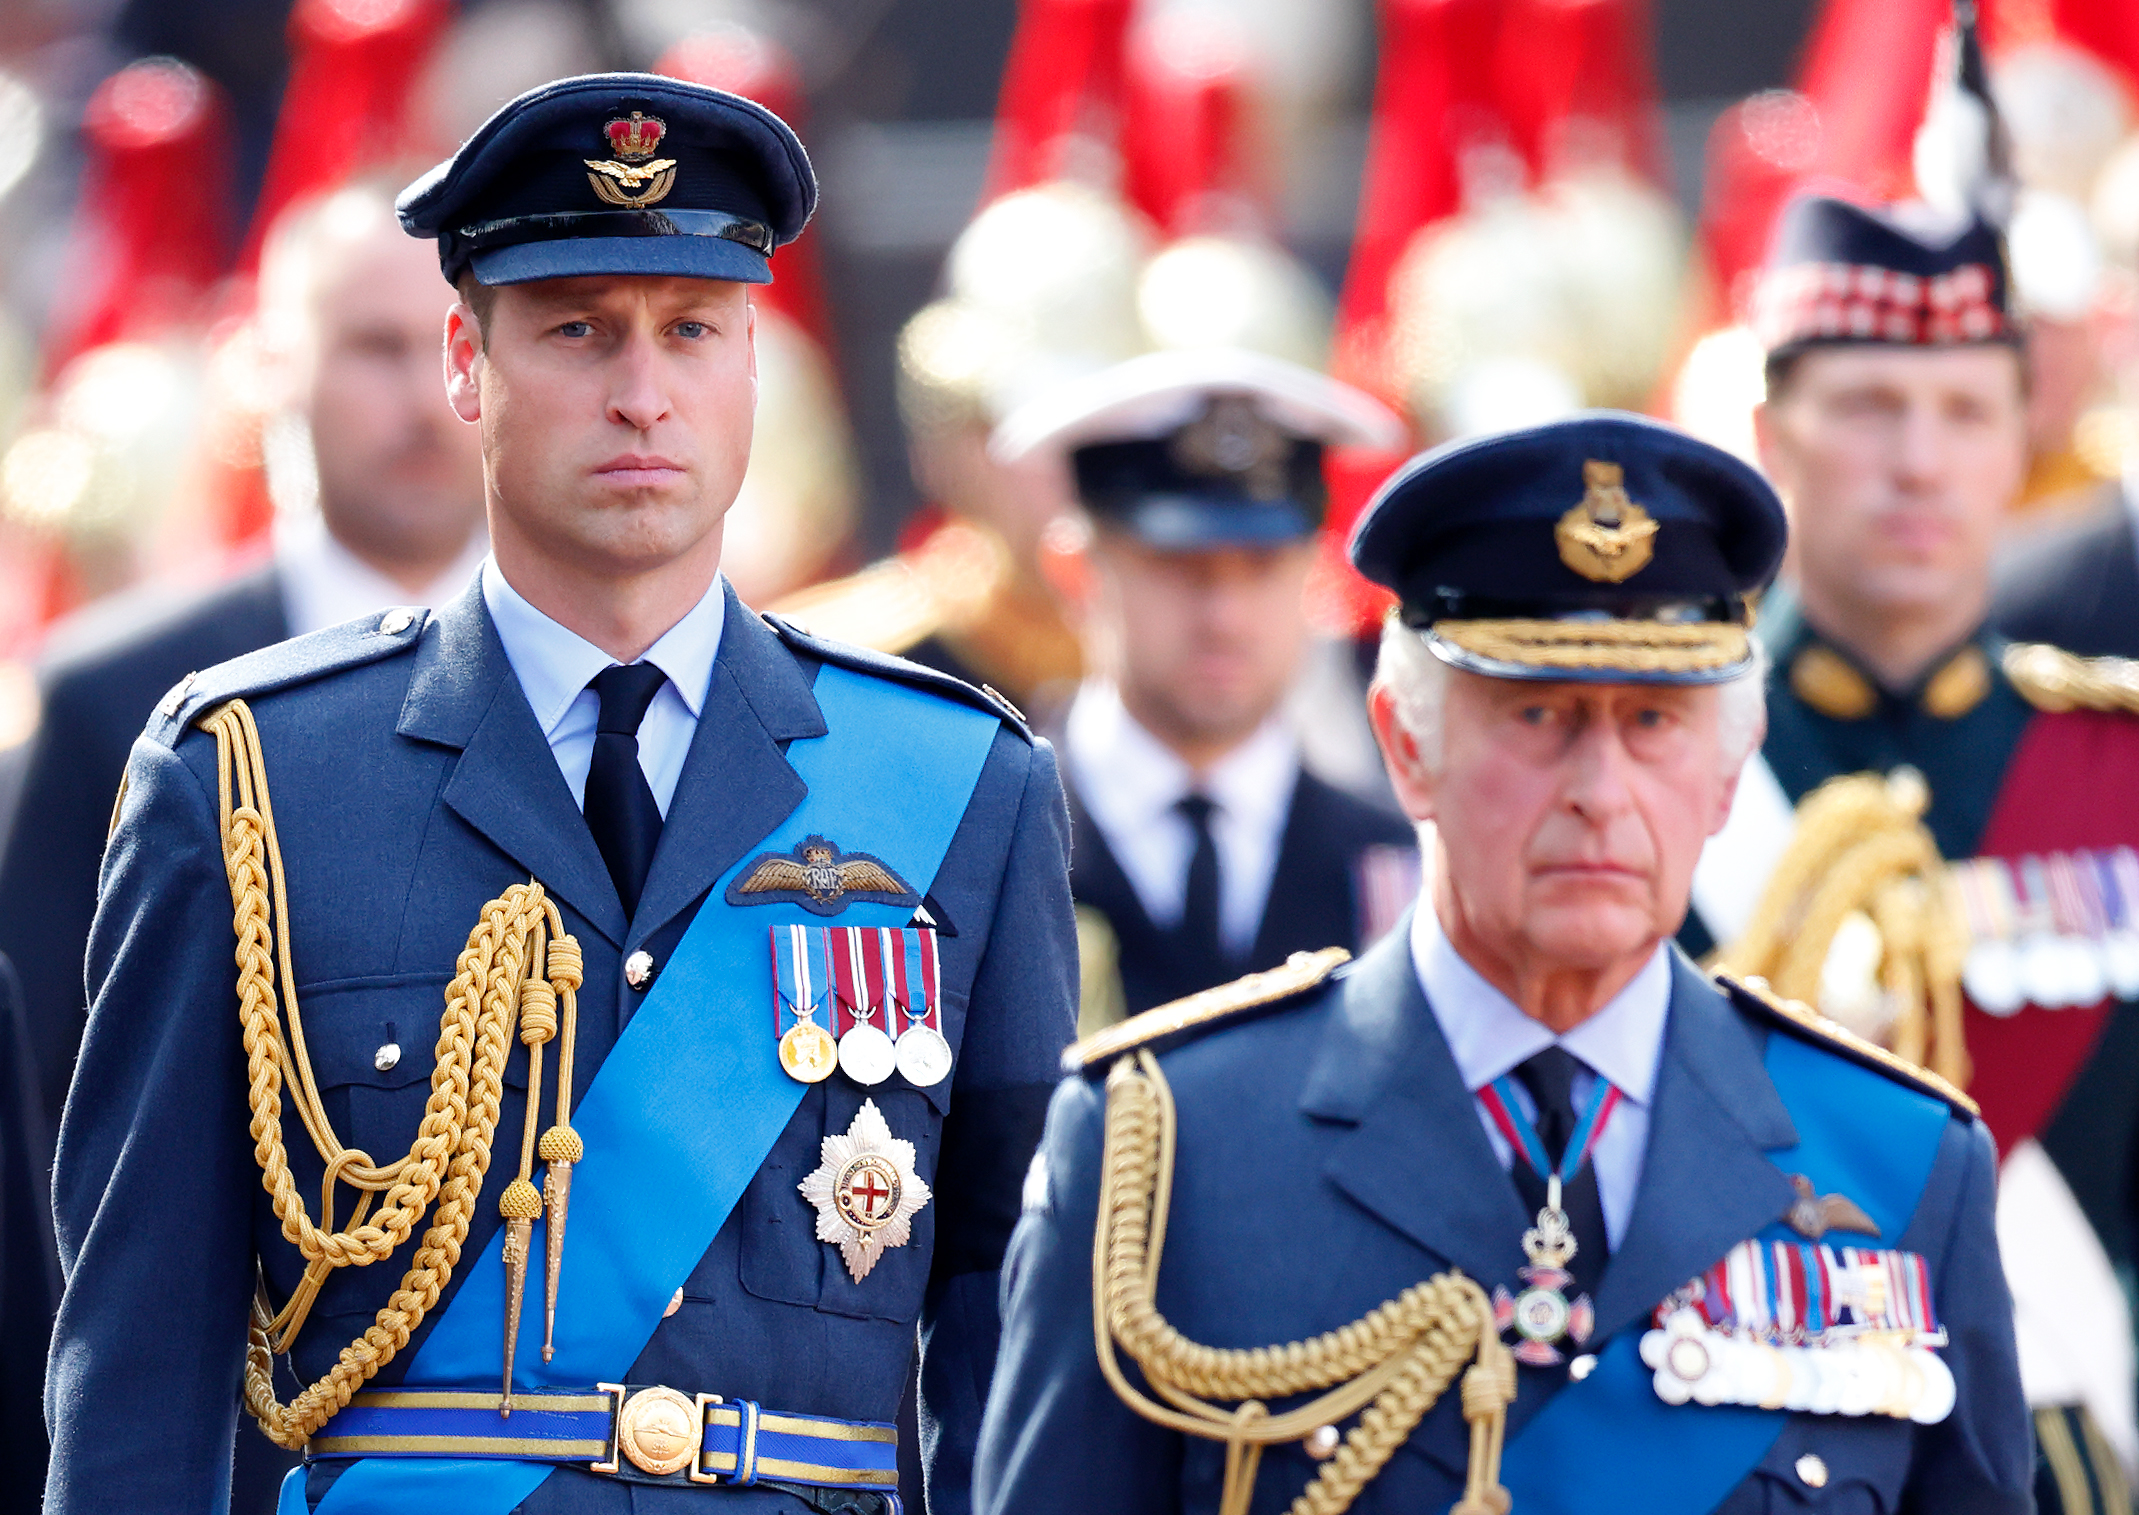 Prinz William hat sich gemeldet, um bei weiteren königlichen Pflichten zu helfen